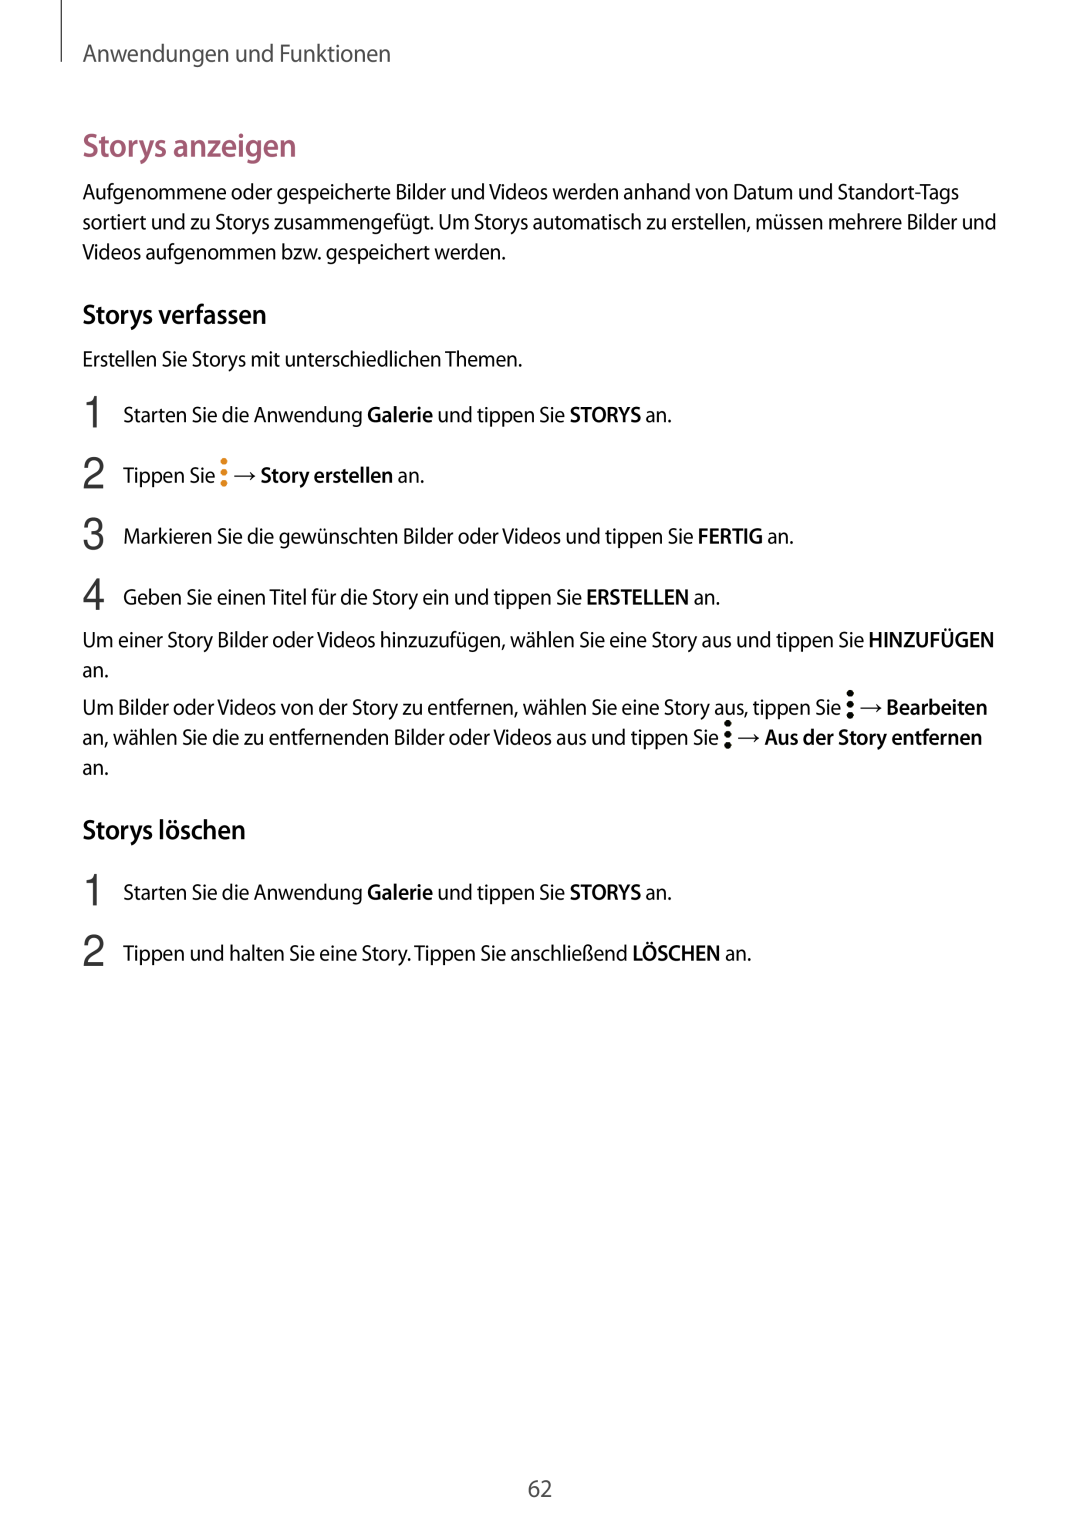 Samsung SM-T555NZWAEUR, SM-T555NZKAAUT manual Storys anzeigen, Storys verfassen, Storys löschen, Anwendungen und Funktionen 